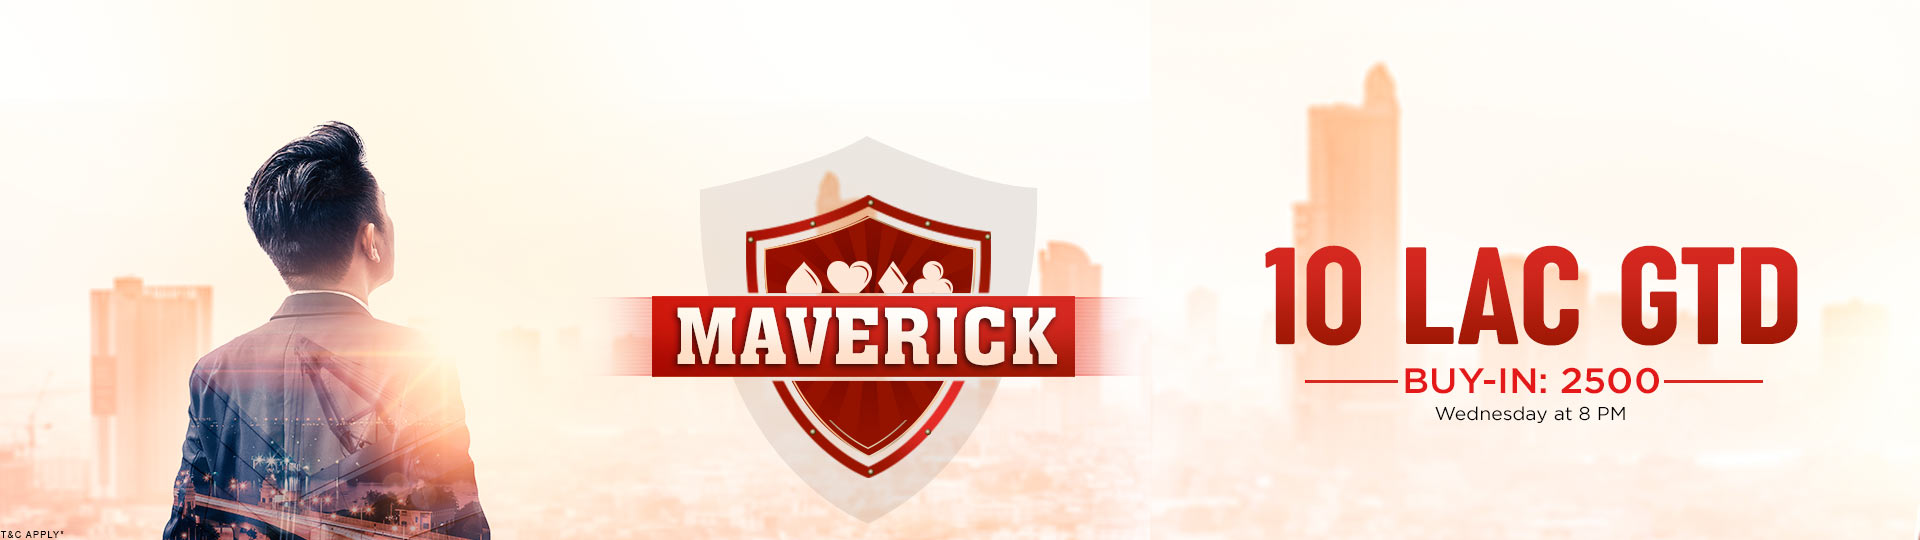 Maverick Poker Tournament 10 Lacs GTD at Adda52.com